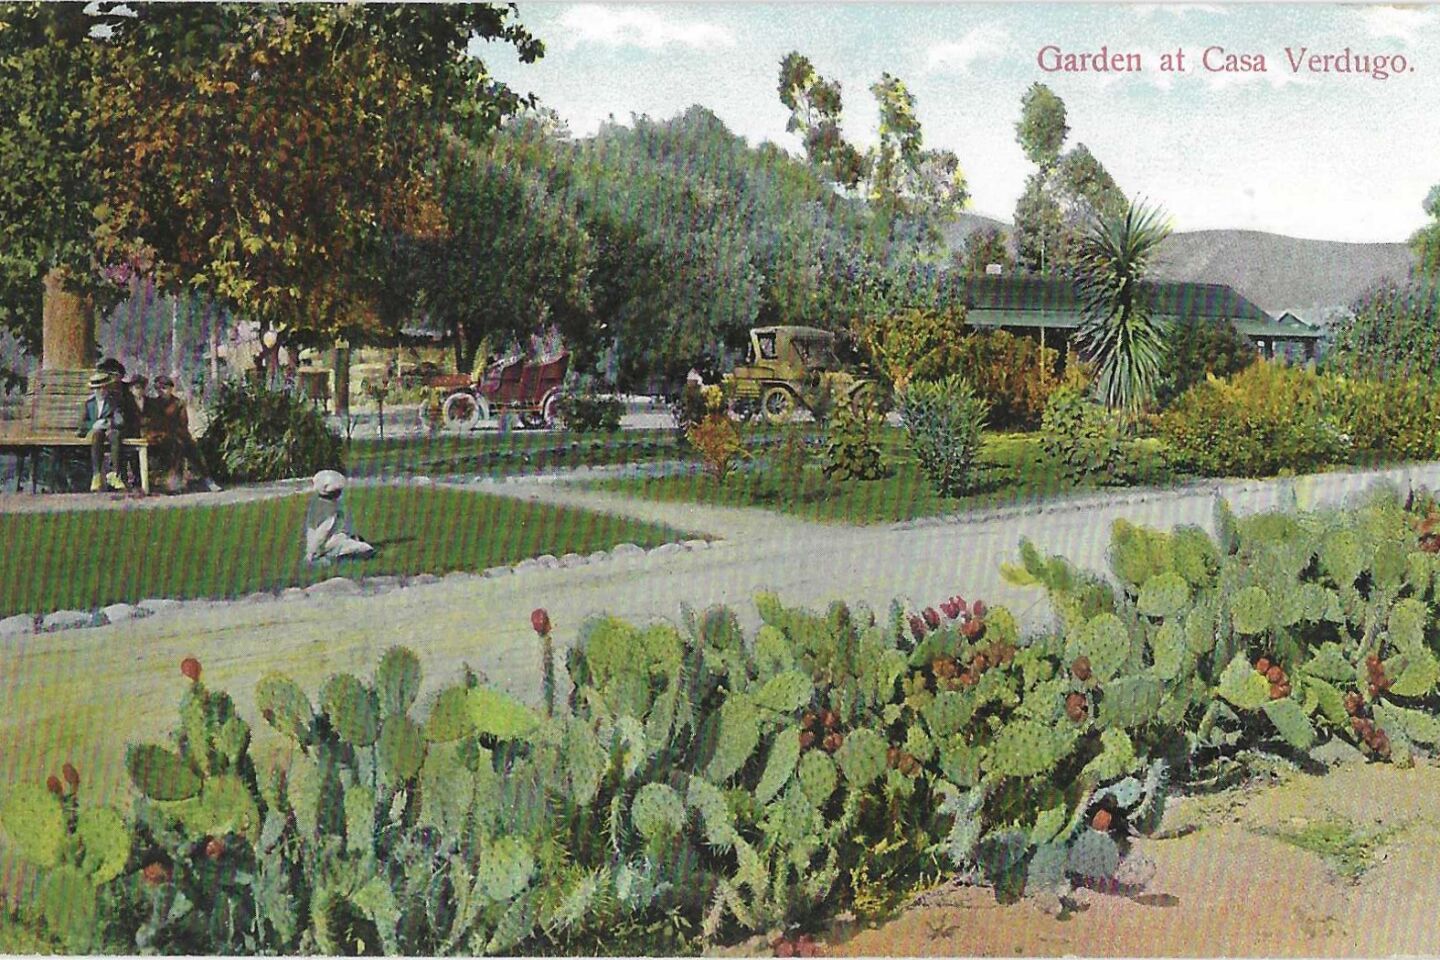 A postcard of Casa Verdugo's garden